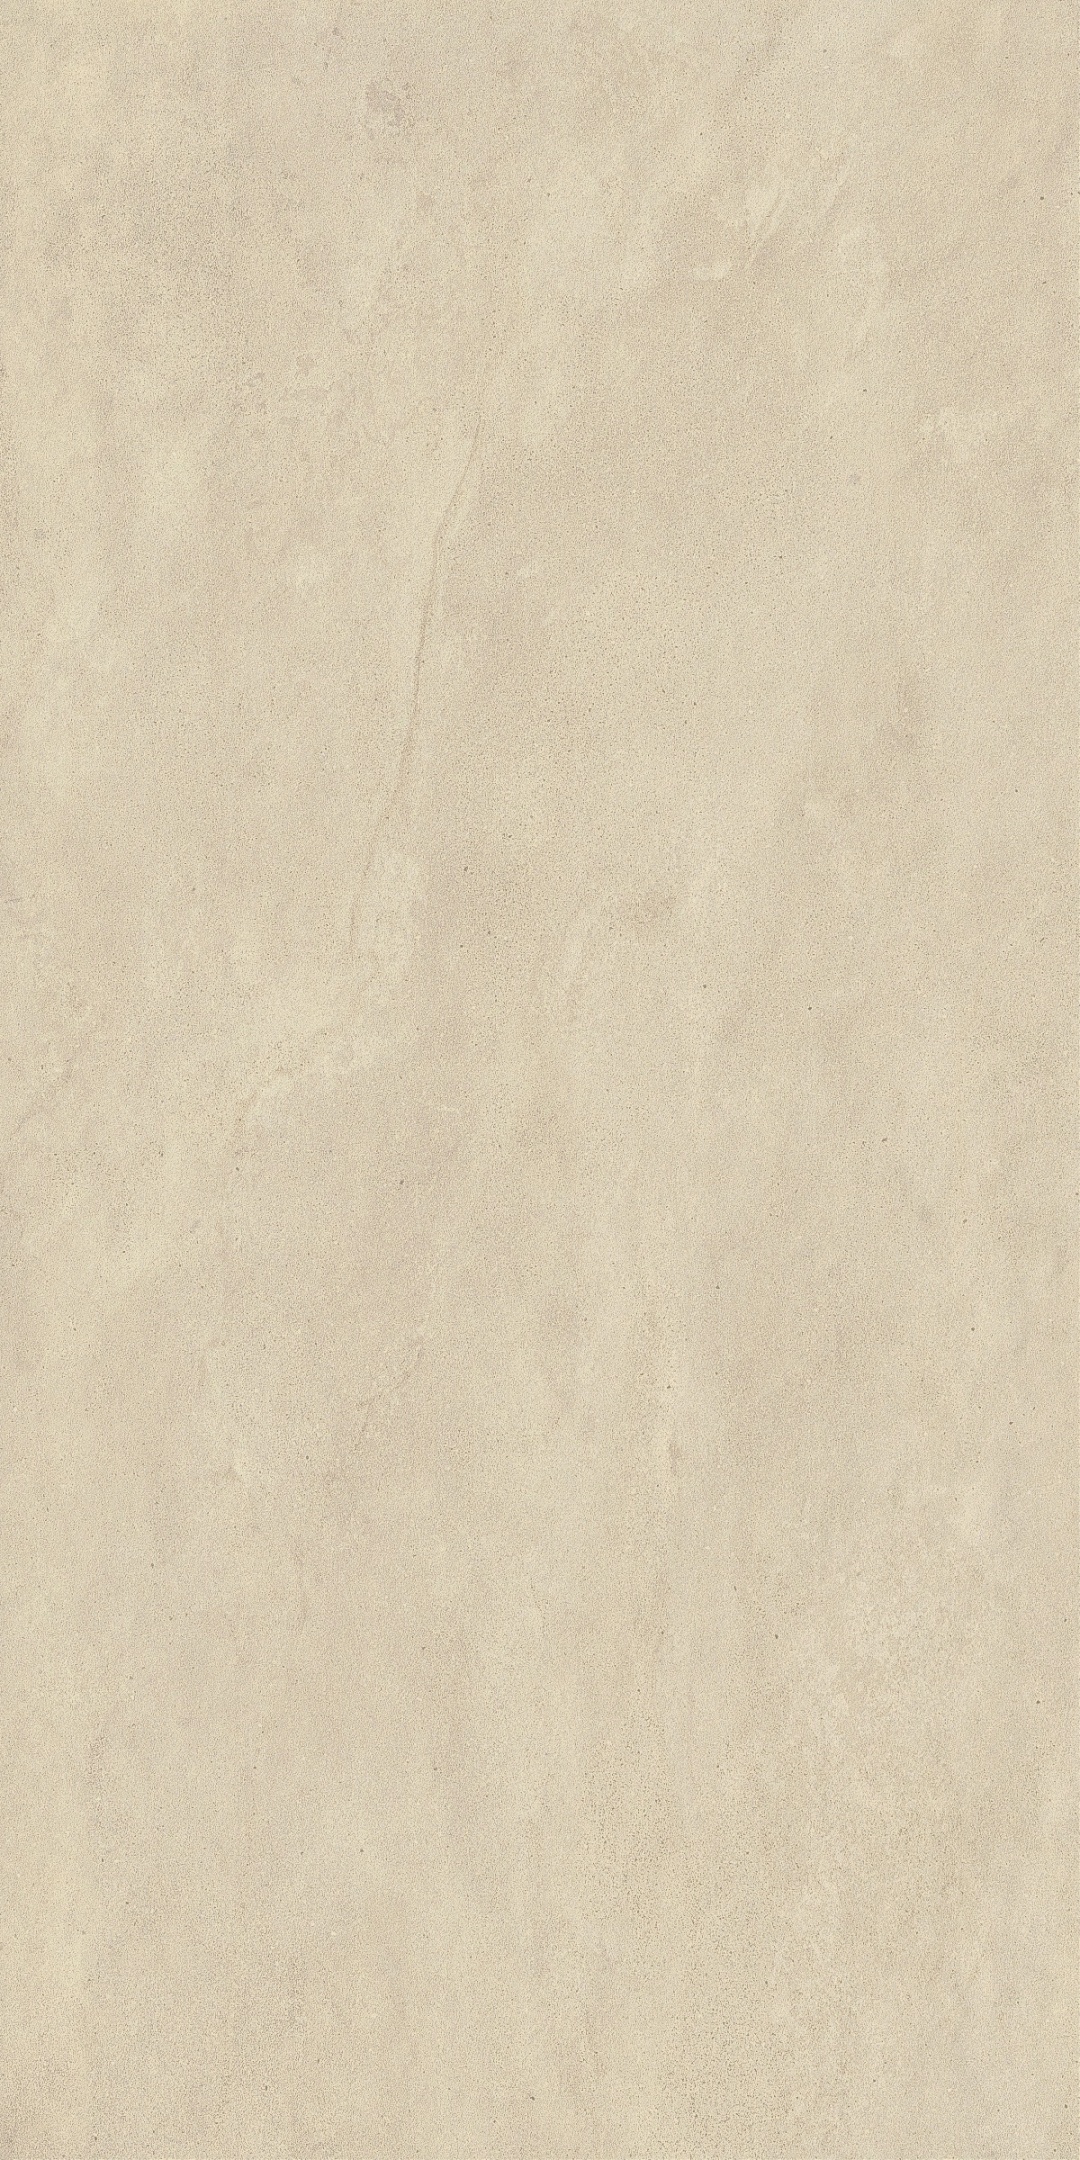 惠达瓷砖西沙系列|质感与视觉碰撞 让空间充满遐想(图29)